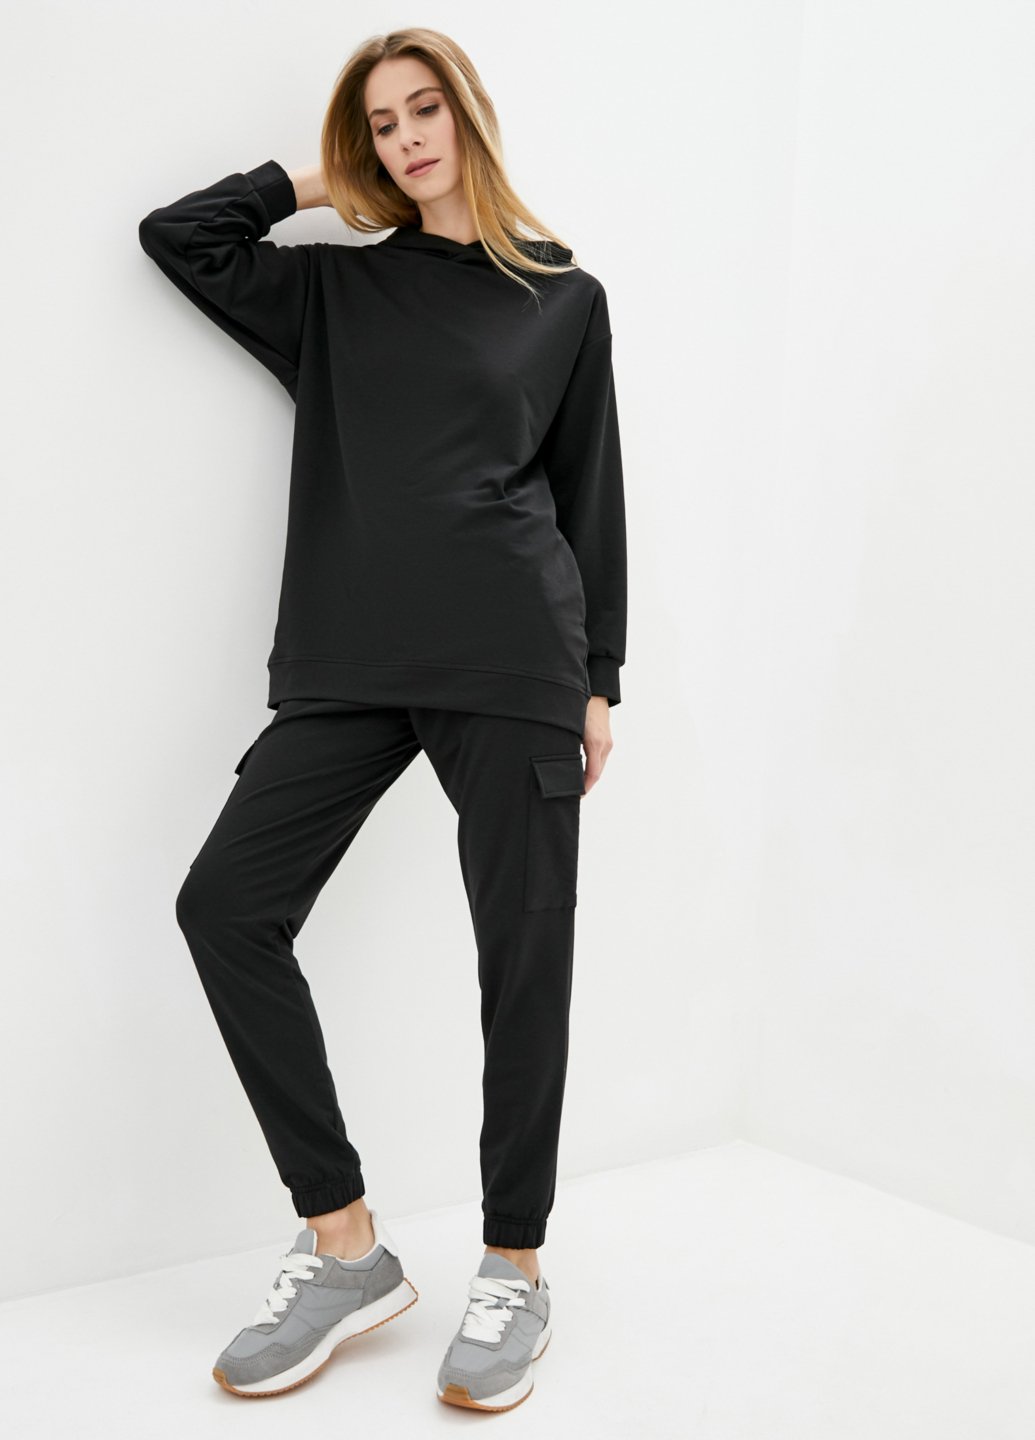 Купить Спортивный костюм женский черного цвета Merlini Челси 100000066, размер 42-44 в интернет-магазине